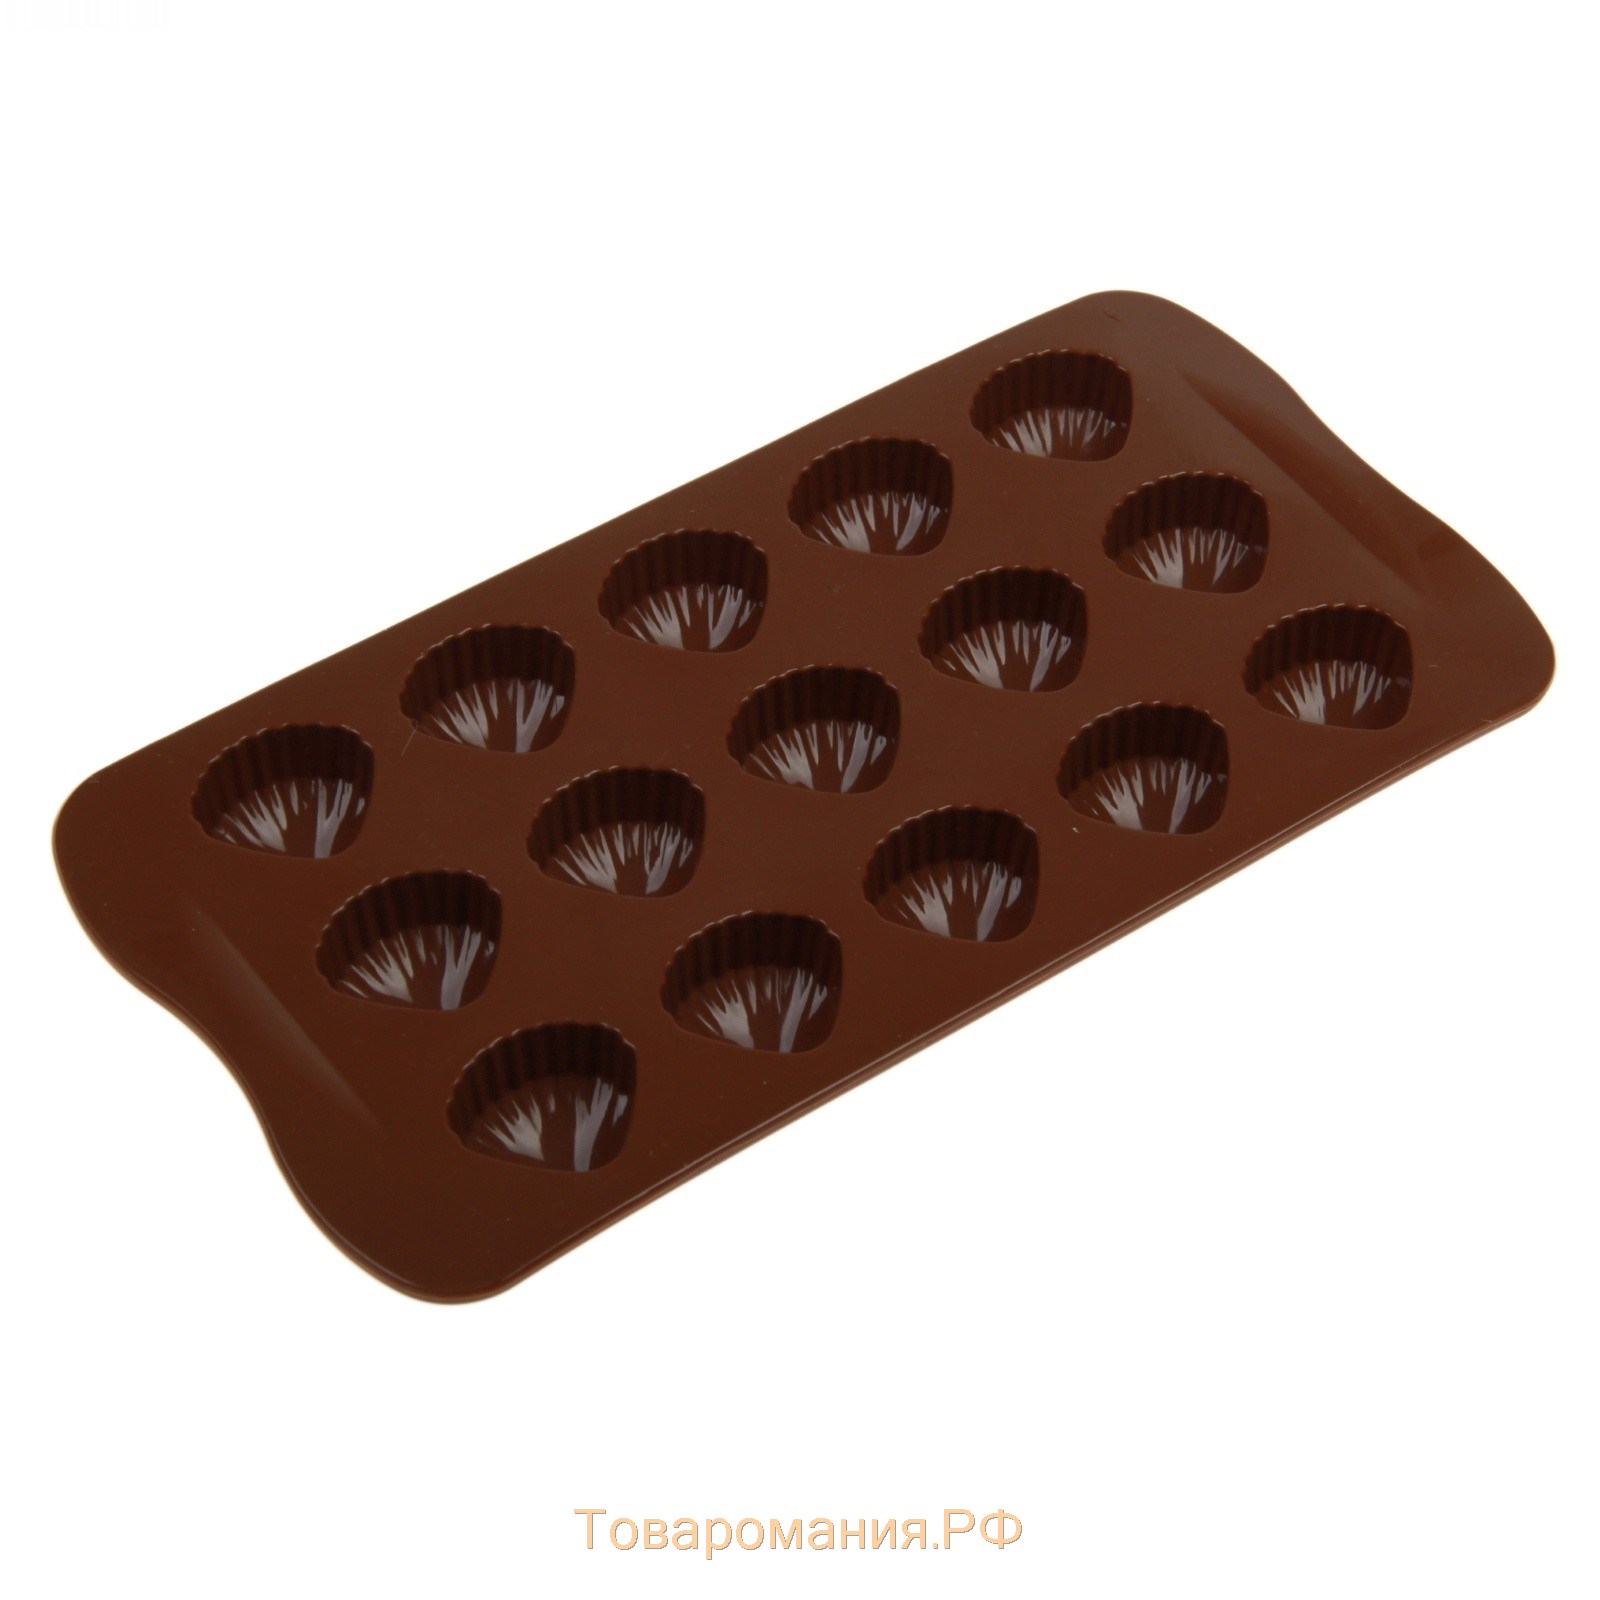 Форма для шоколада «Ракушки», силикон, 20,5×10,5 см, 15 ячеек (2,7×2,4 см), цвет коричневый